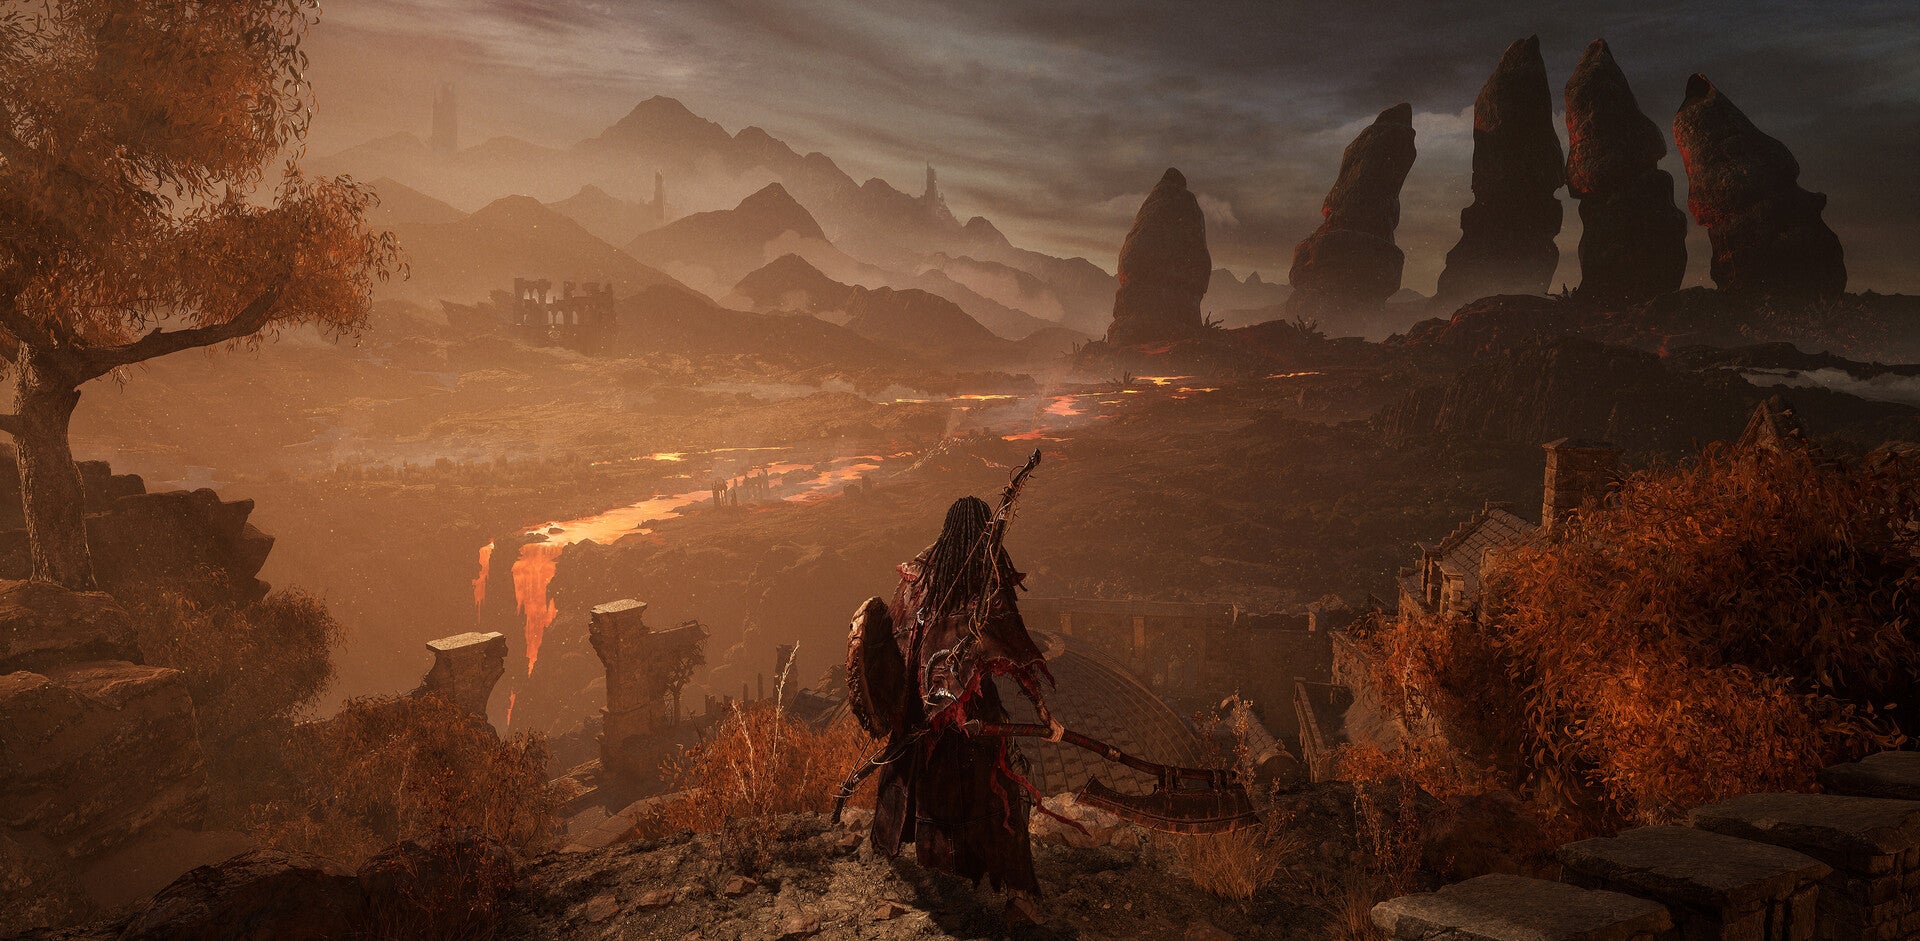 Zapowiedź Lords of the Fallen – gracz widzi rozległy świat stopionej lawy i czerwono-brązowych skał